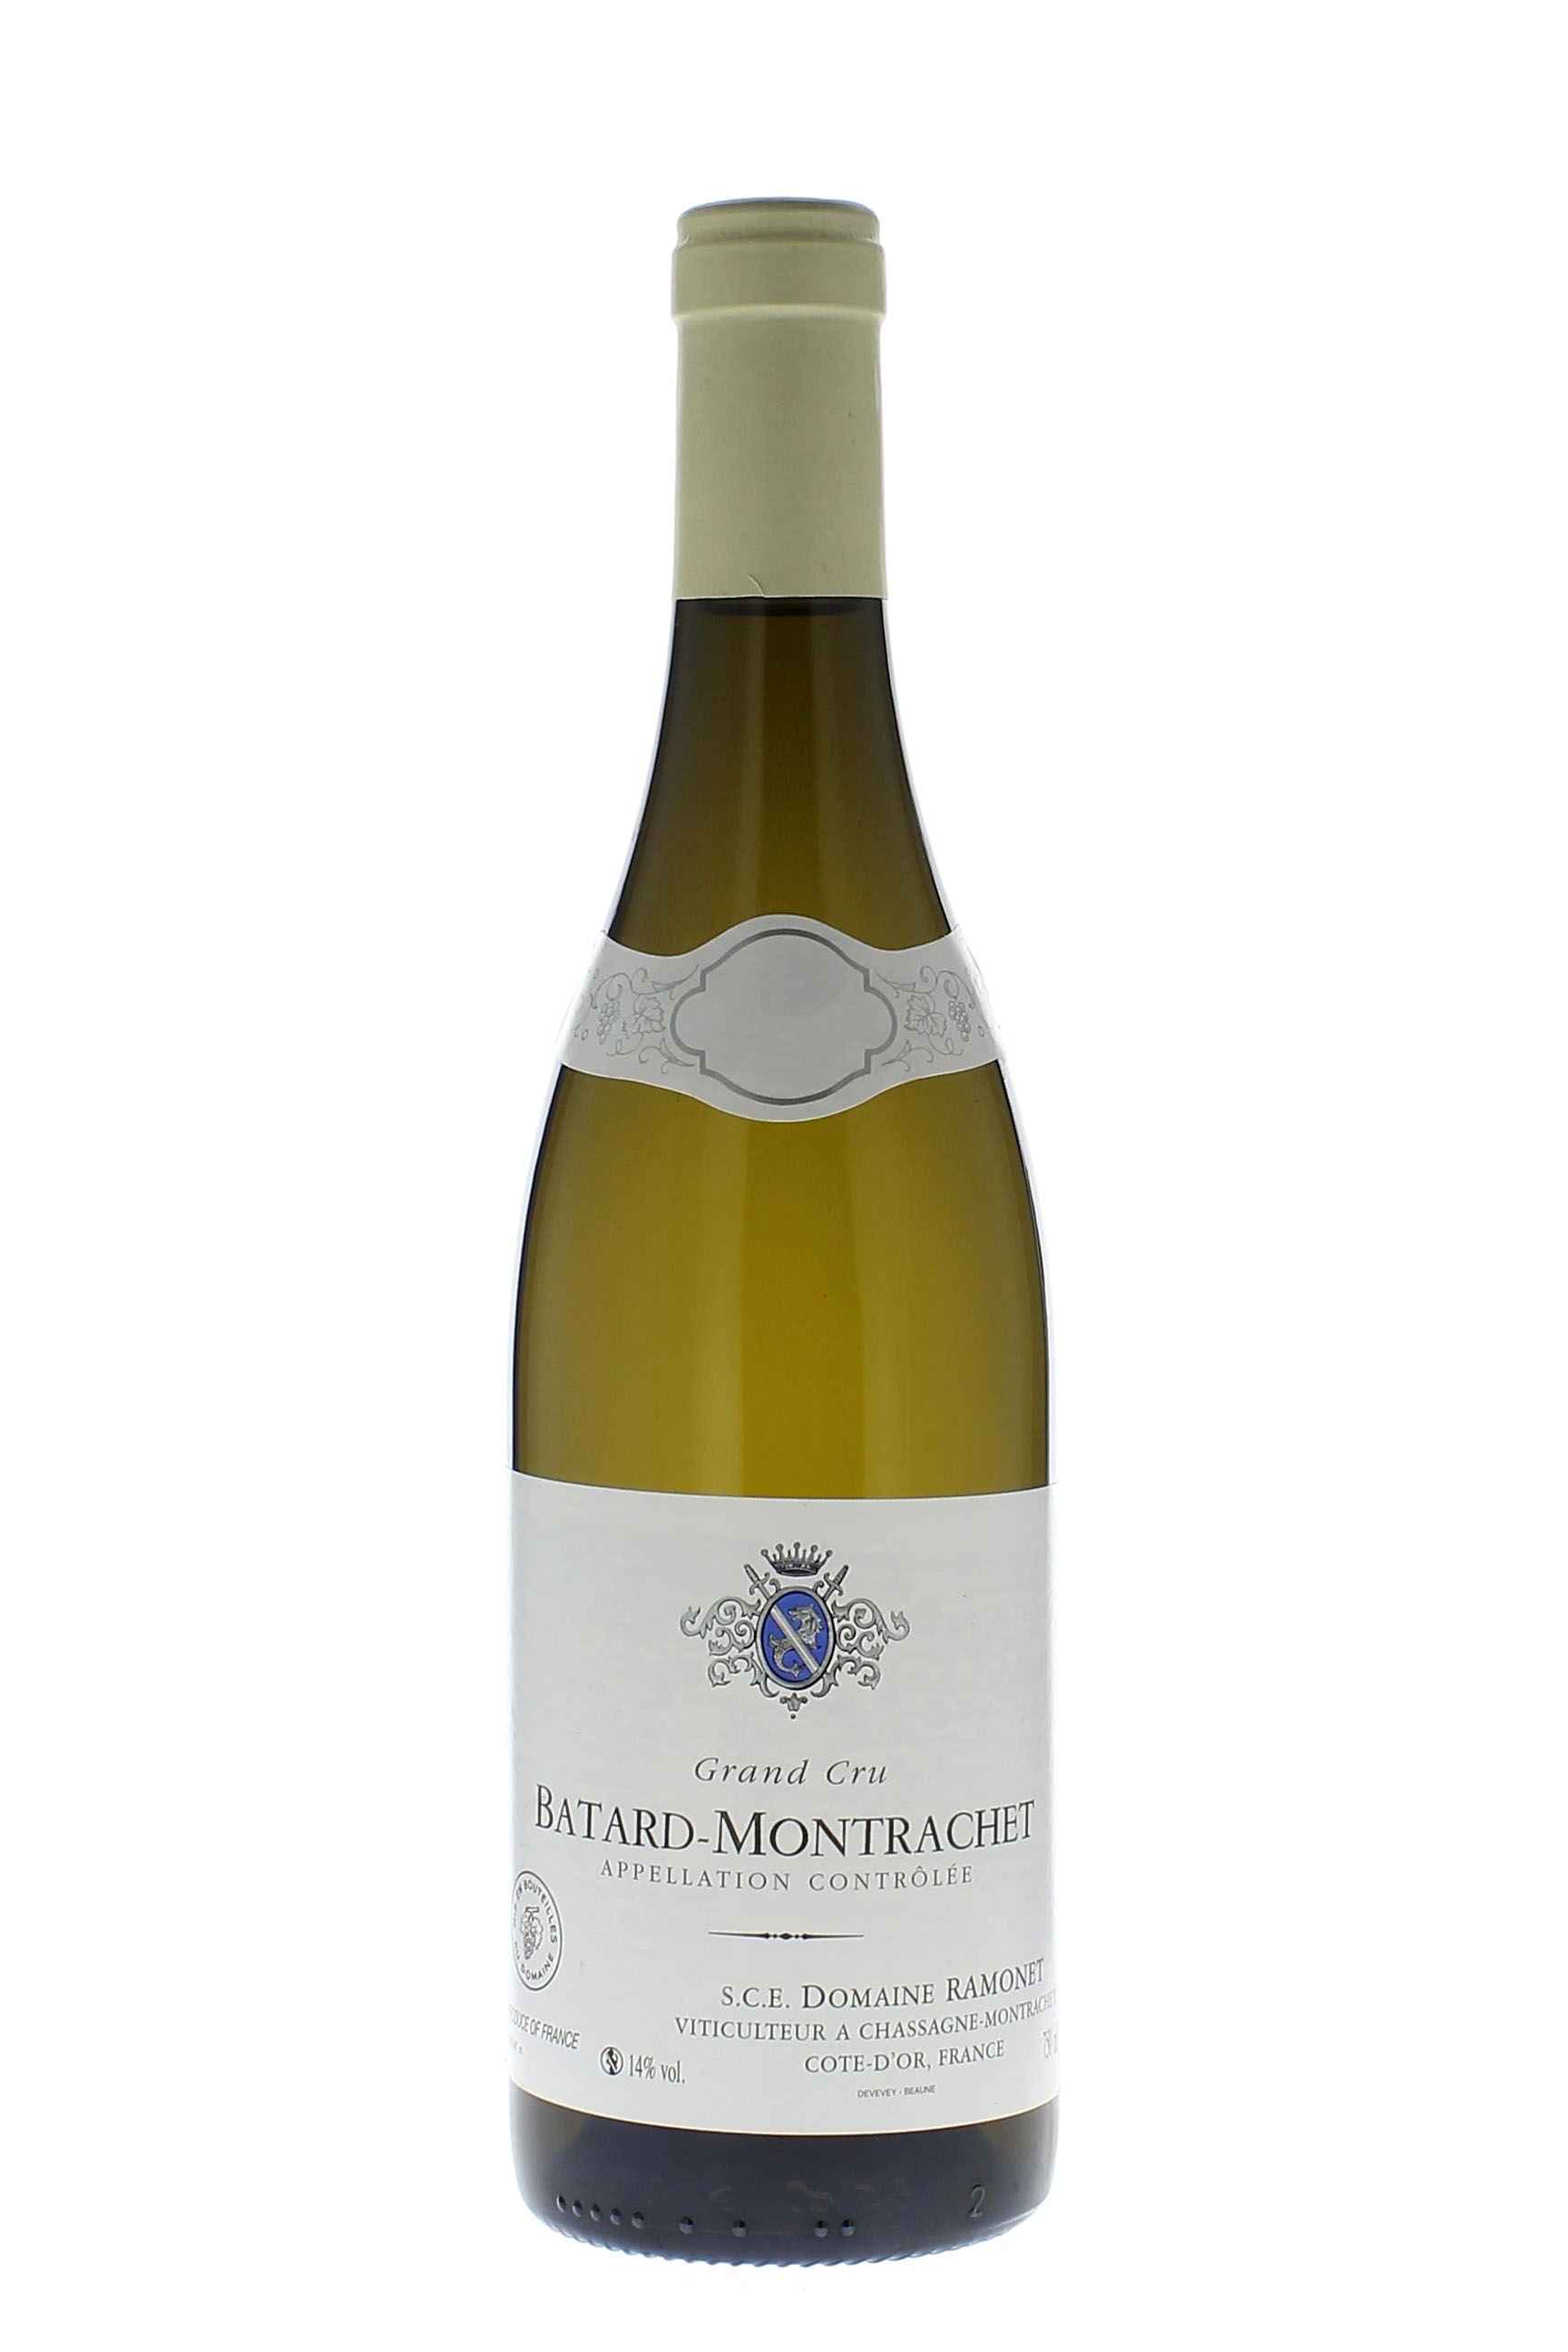 Batard montrachet 2001 Domaine RAMONET, Bourgogne blanc